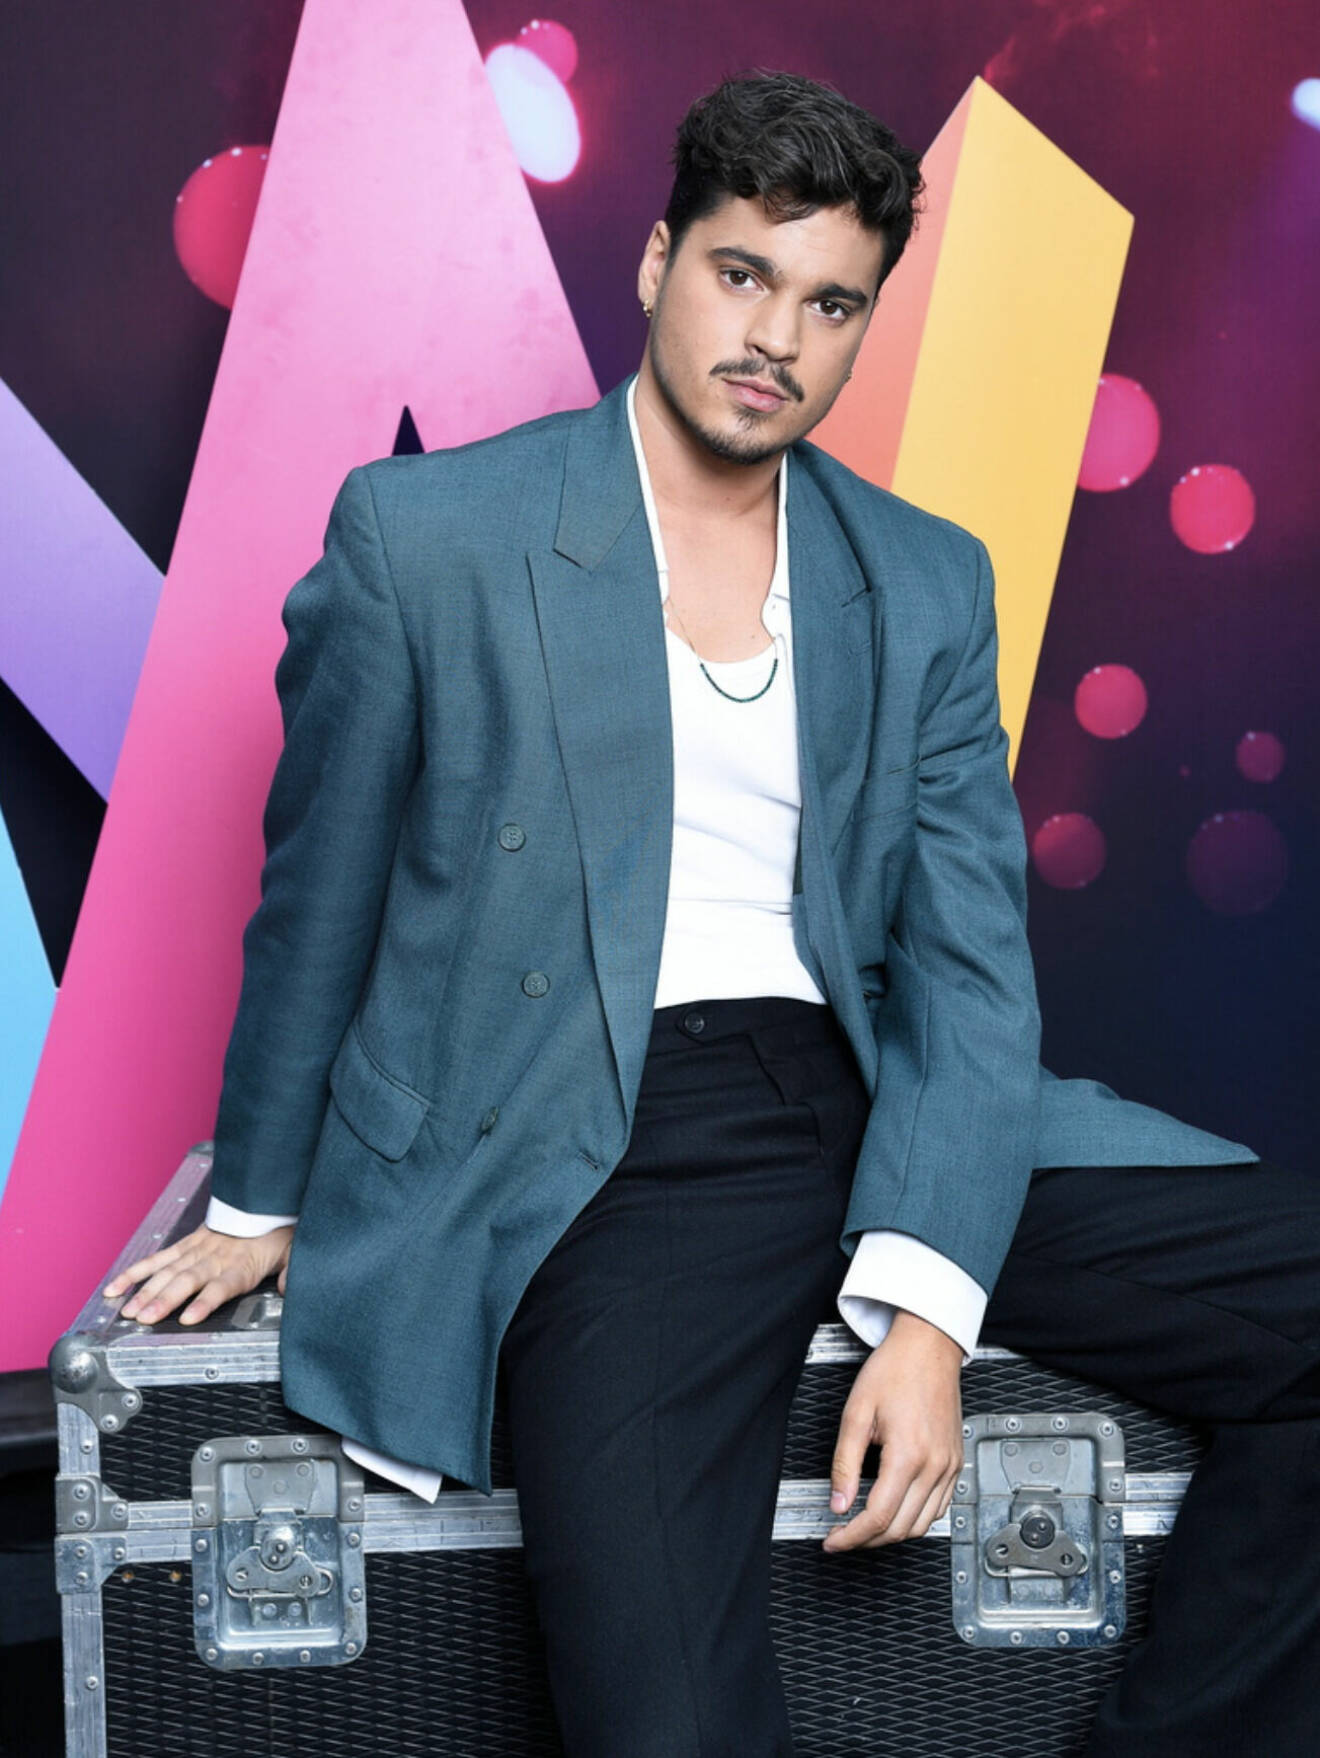 Oscar Zia är programledare för Melodifestivalen 2022 med grön kavaj